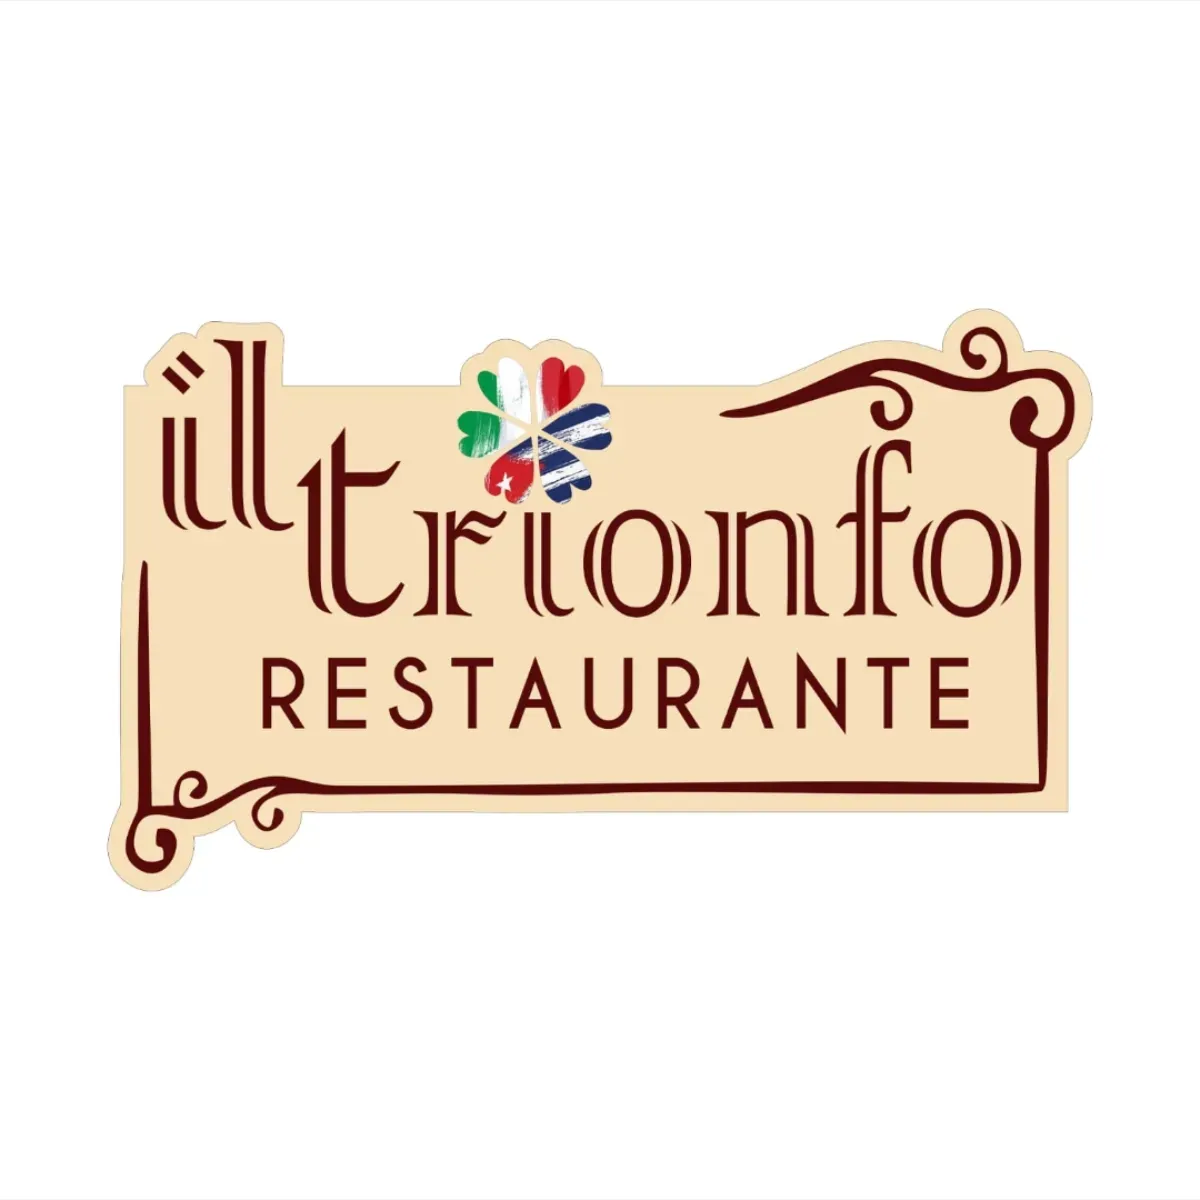 Restaurante IlTrionfo